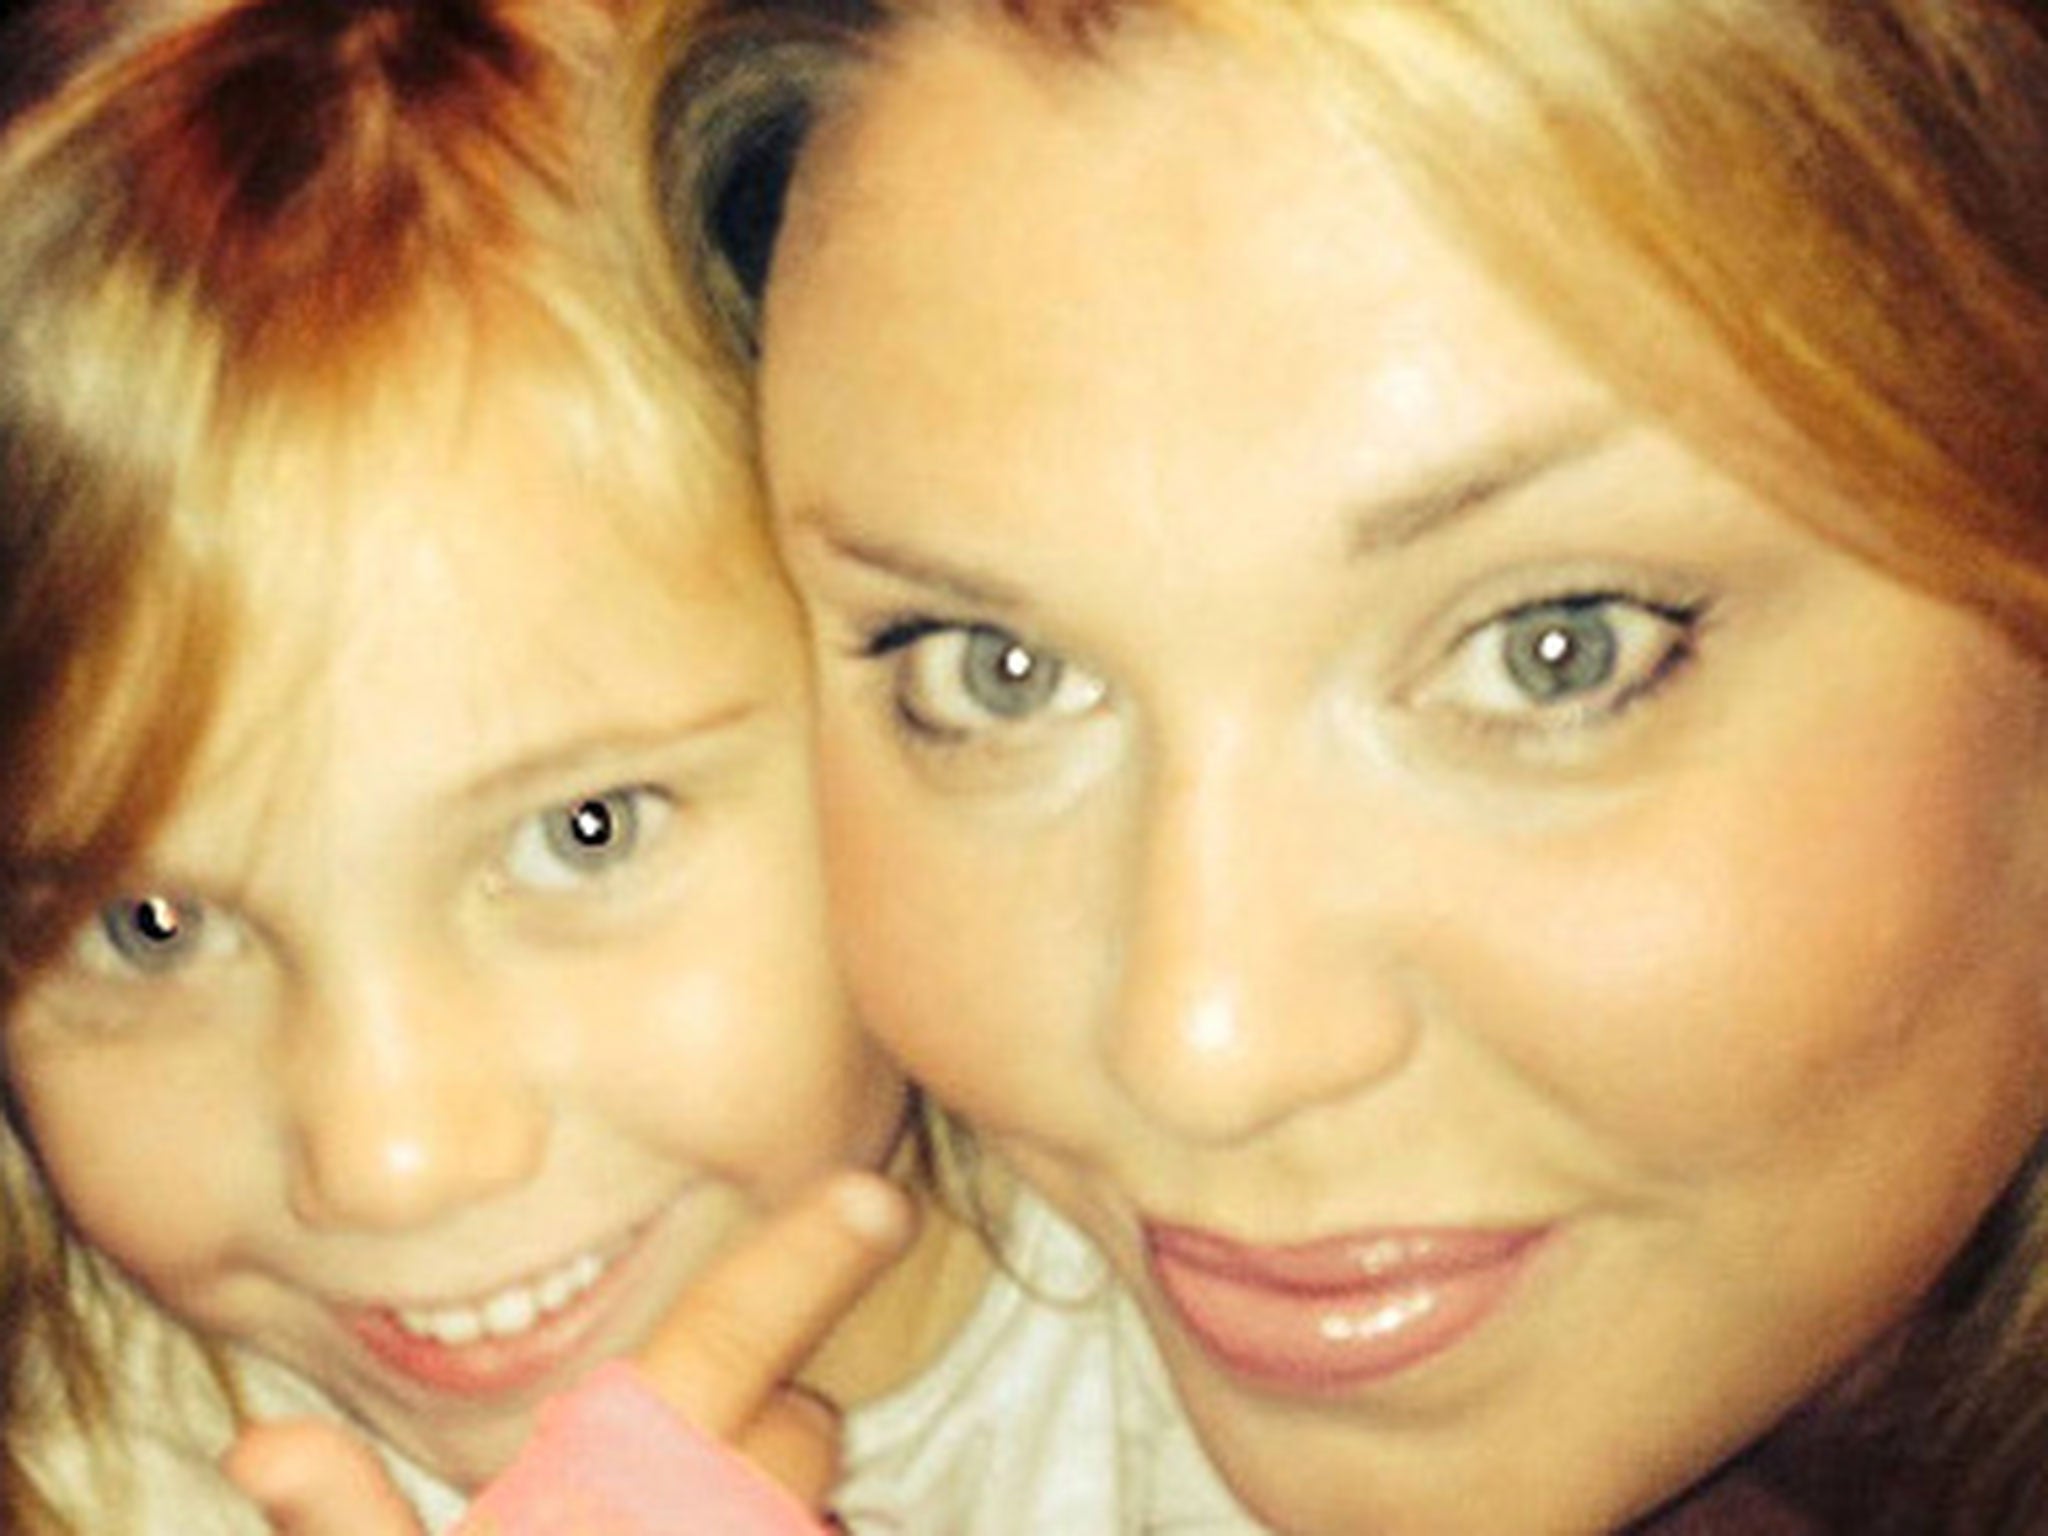 Five-year-old Sienna Adderley with her mum Katie